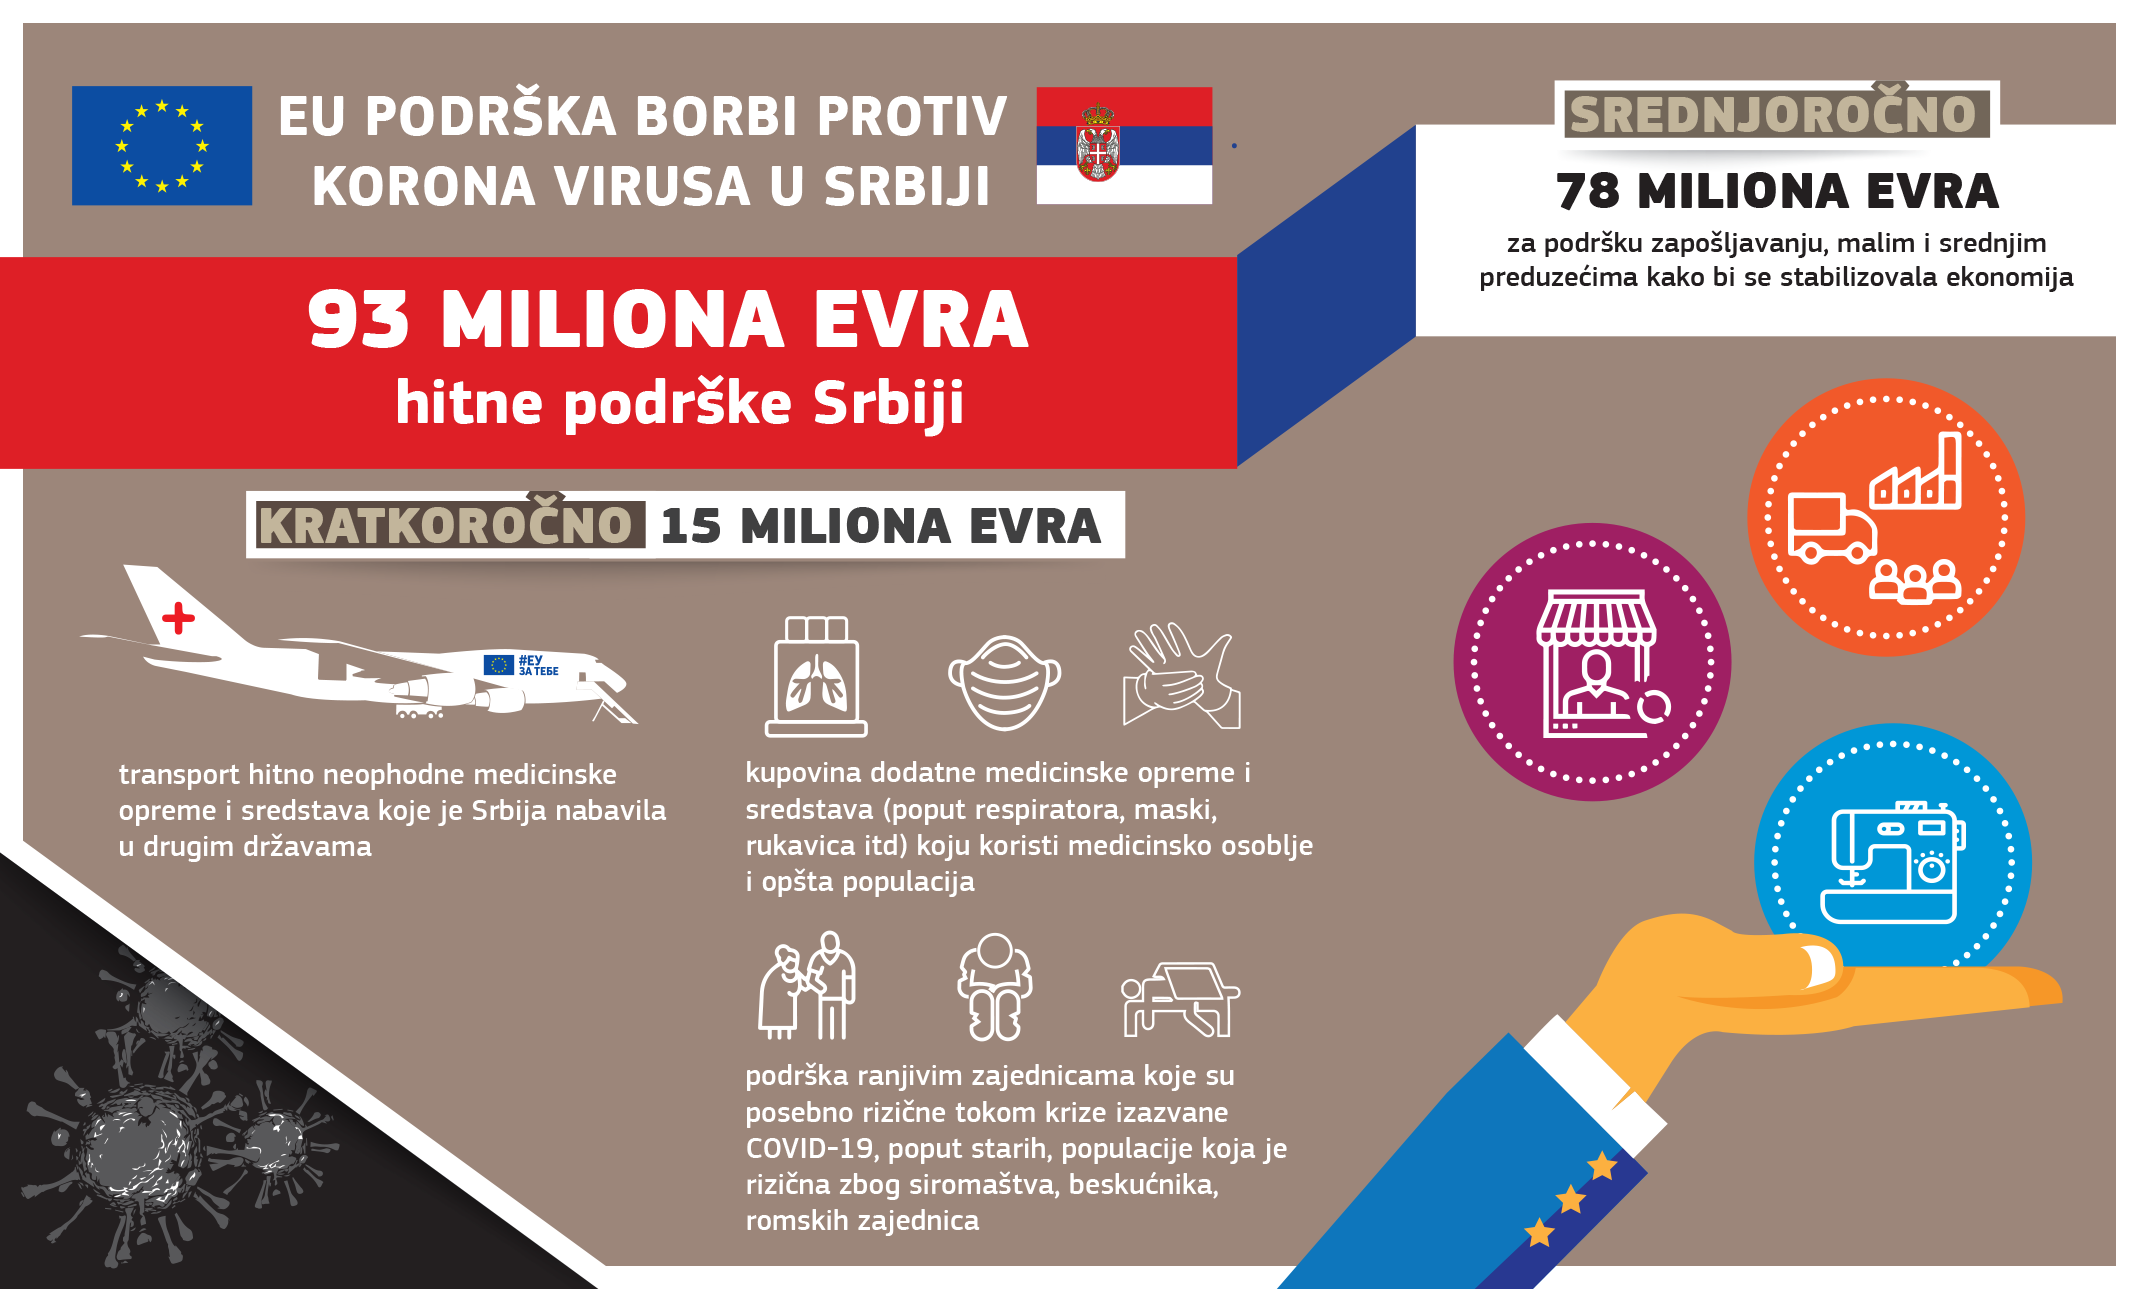 EU partnerstvo sa Srbijom: EU najbolji partner i najveći don